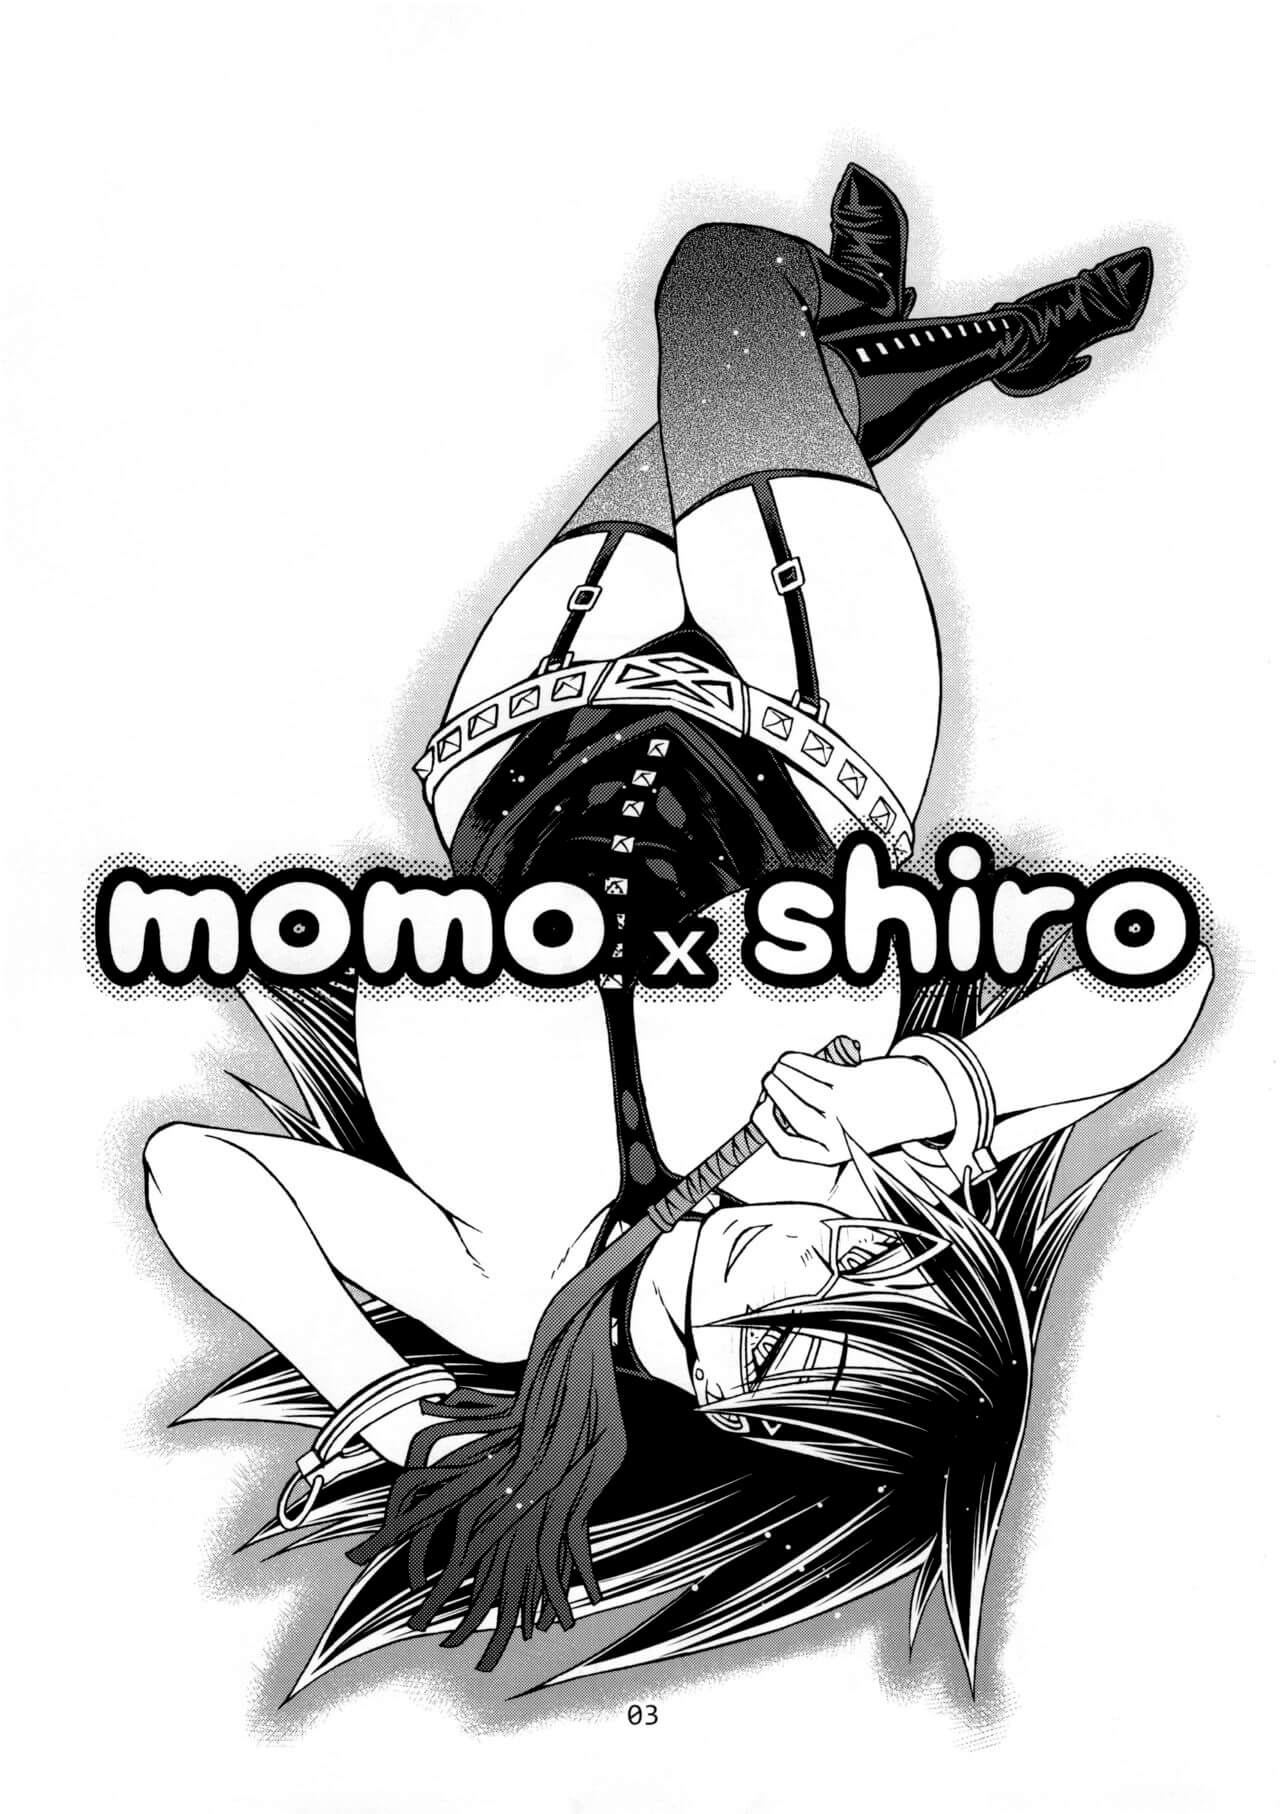 momo-x-shiro-02.jpg